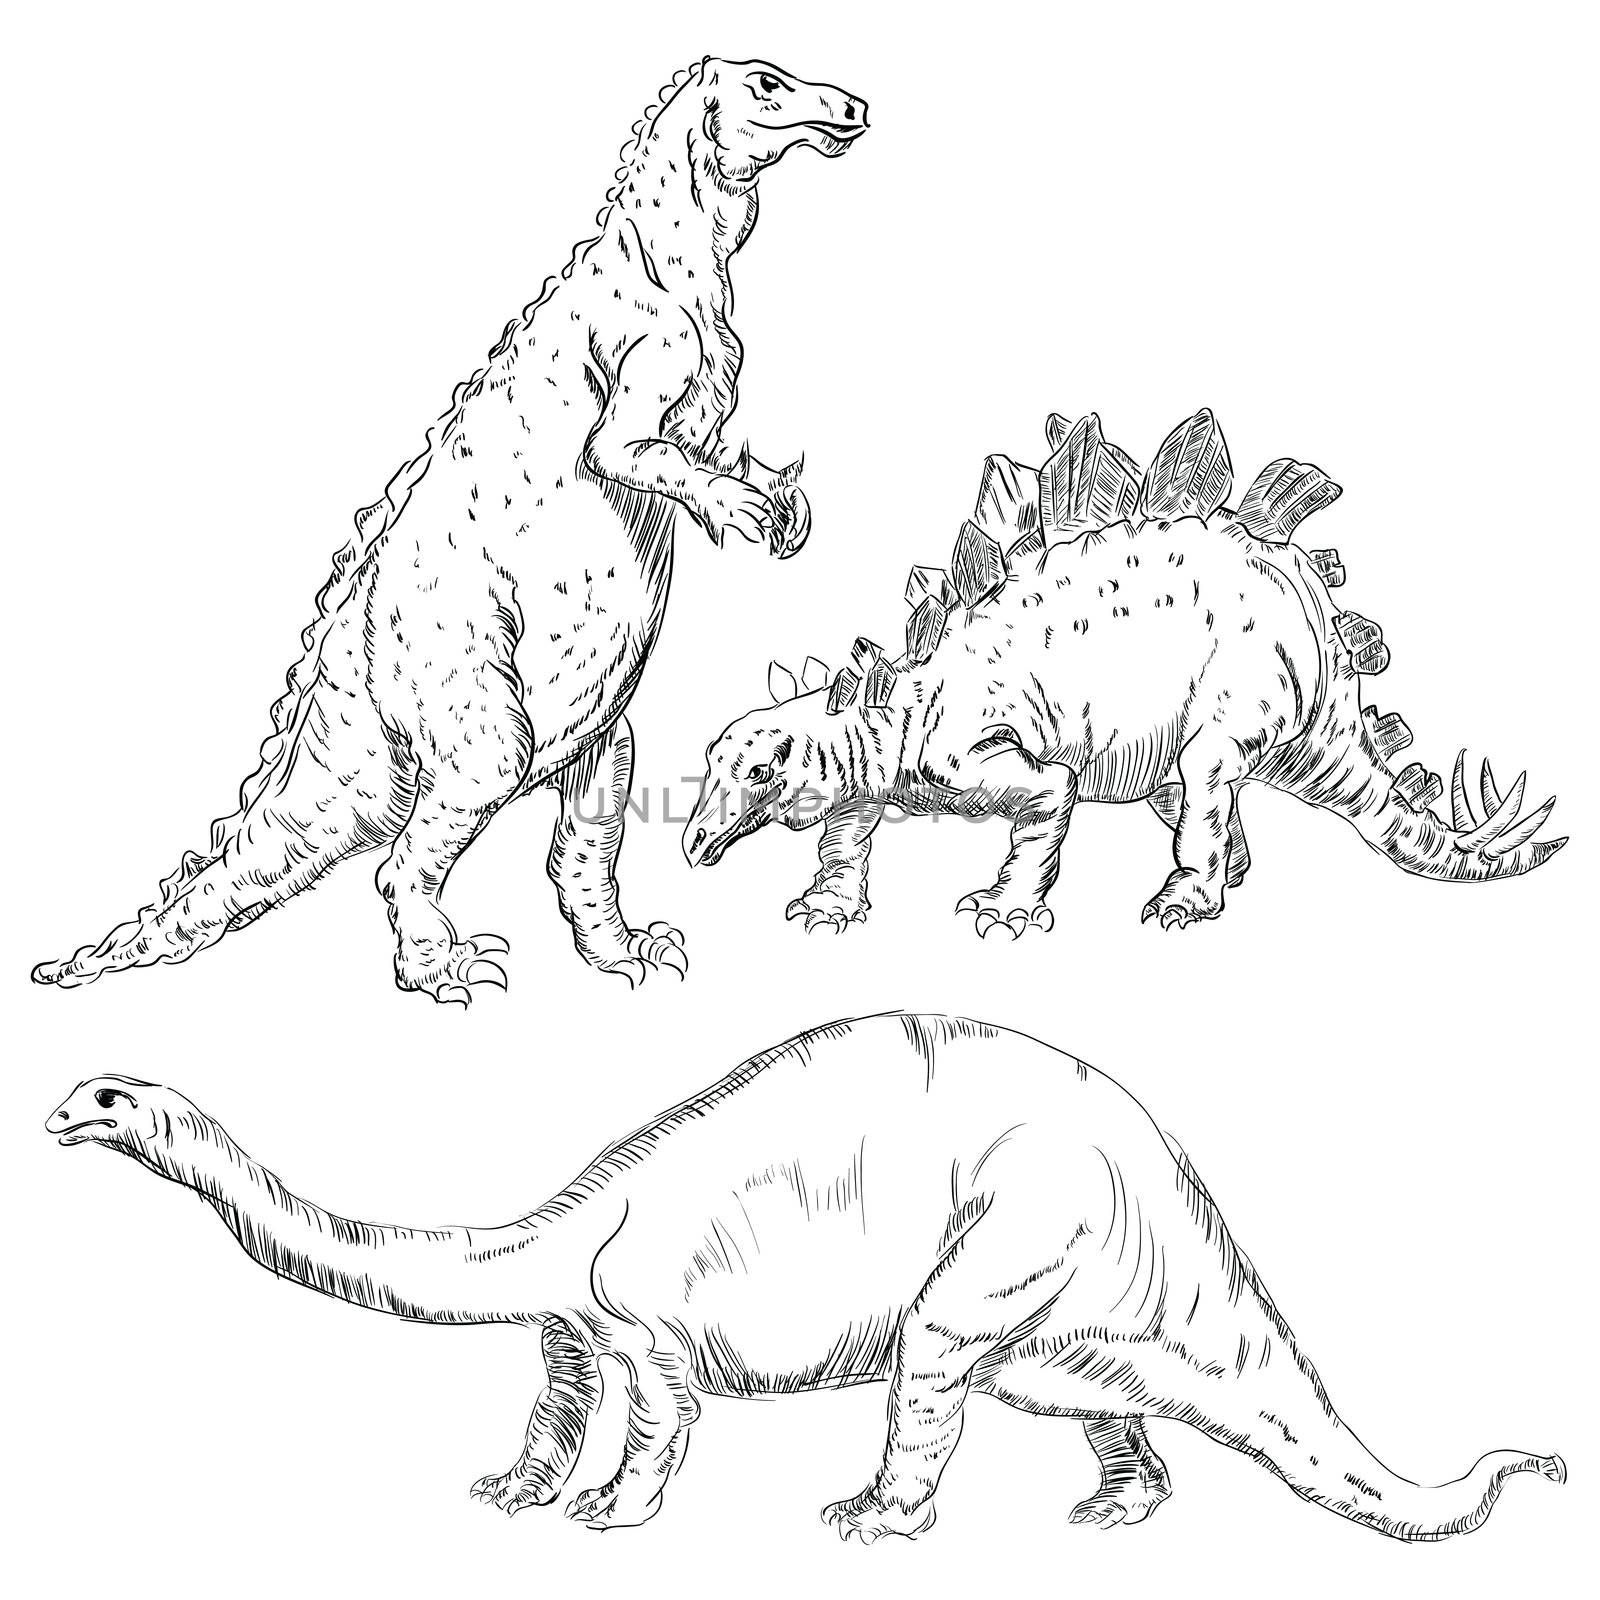 Dinosaurs set by VIPDesignUSA